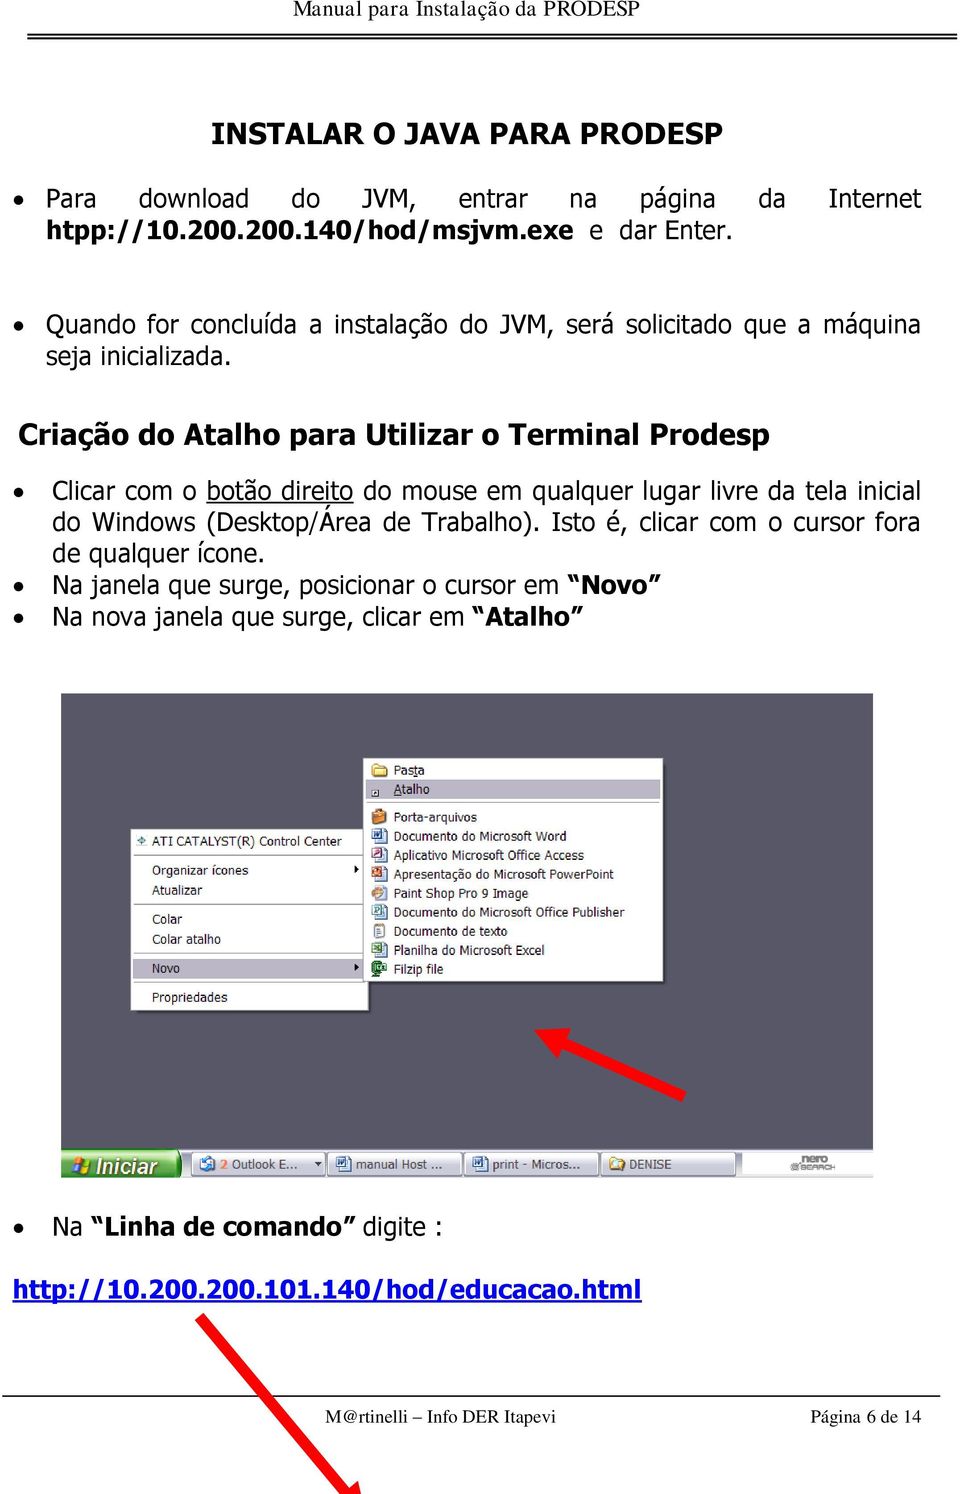 Criação do Atalho para Utilizar o Terminal Prodesp Clicar com o botão direito do mouse em qualquer lugar livre da tela inicial do Windows (Desktop/Área de